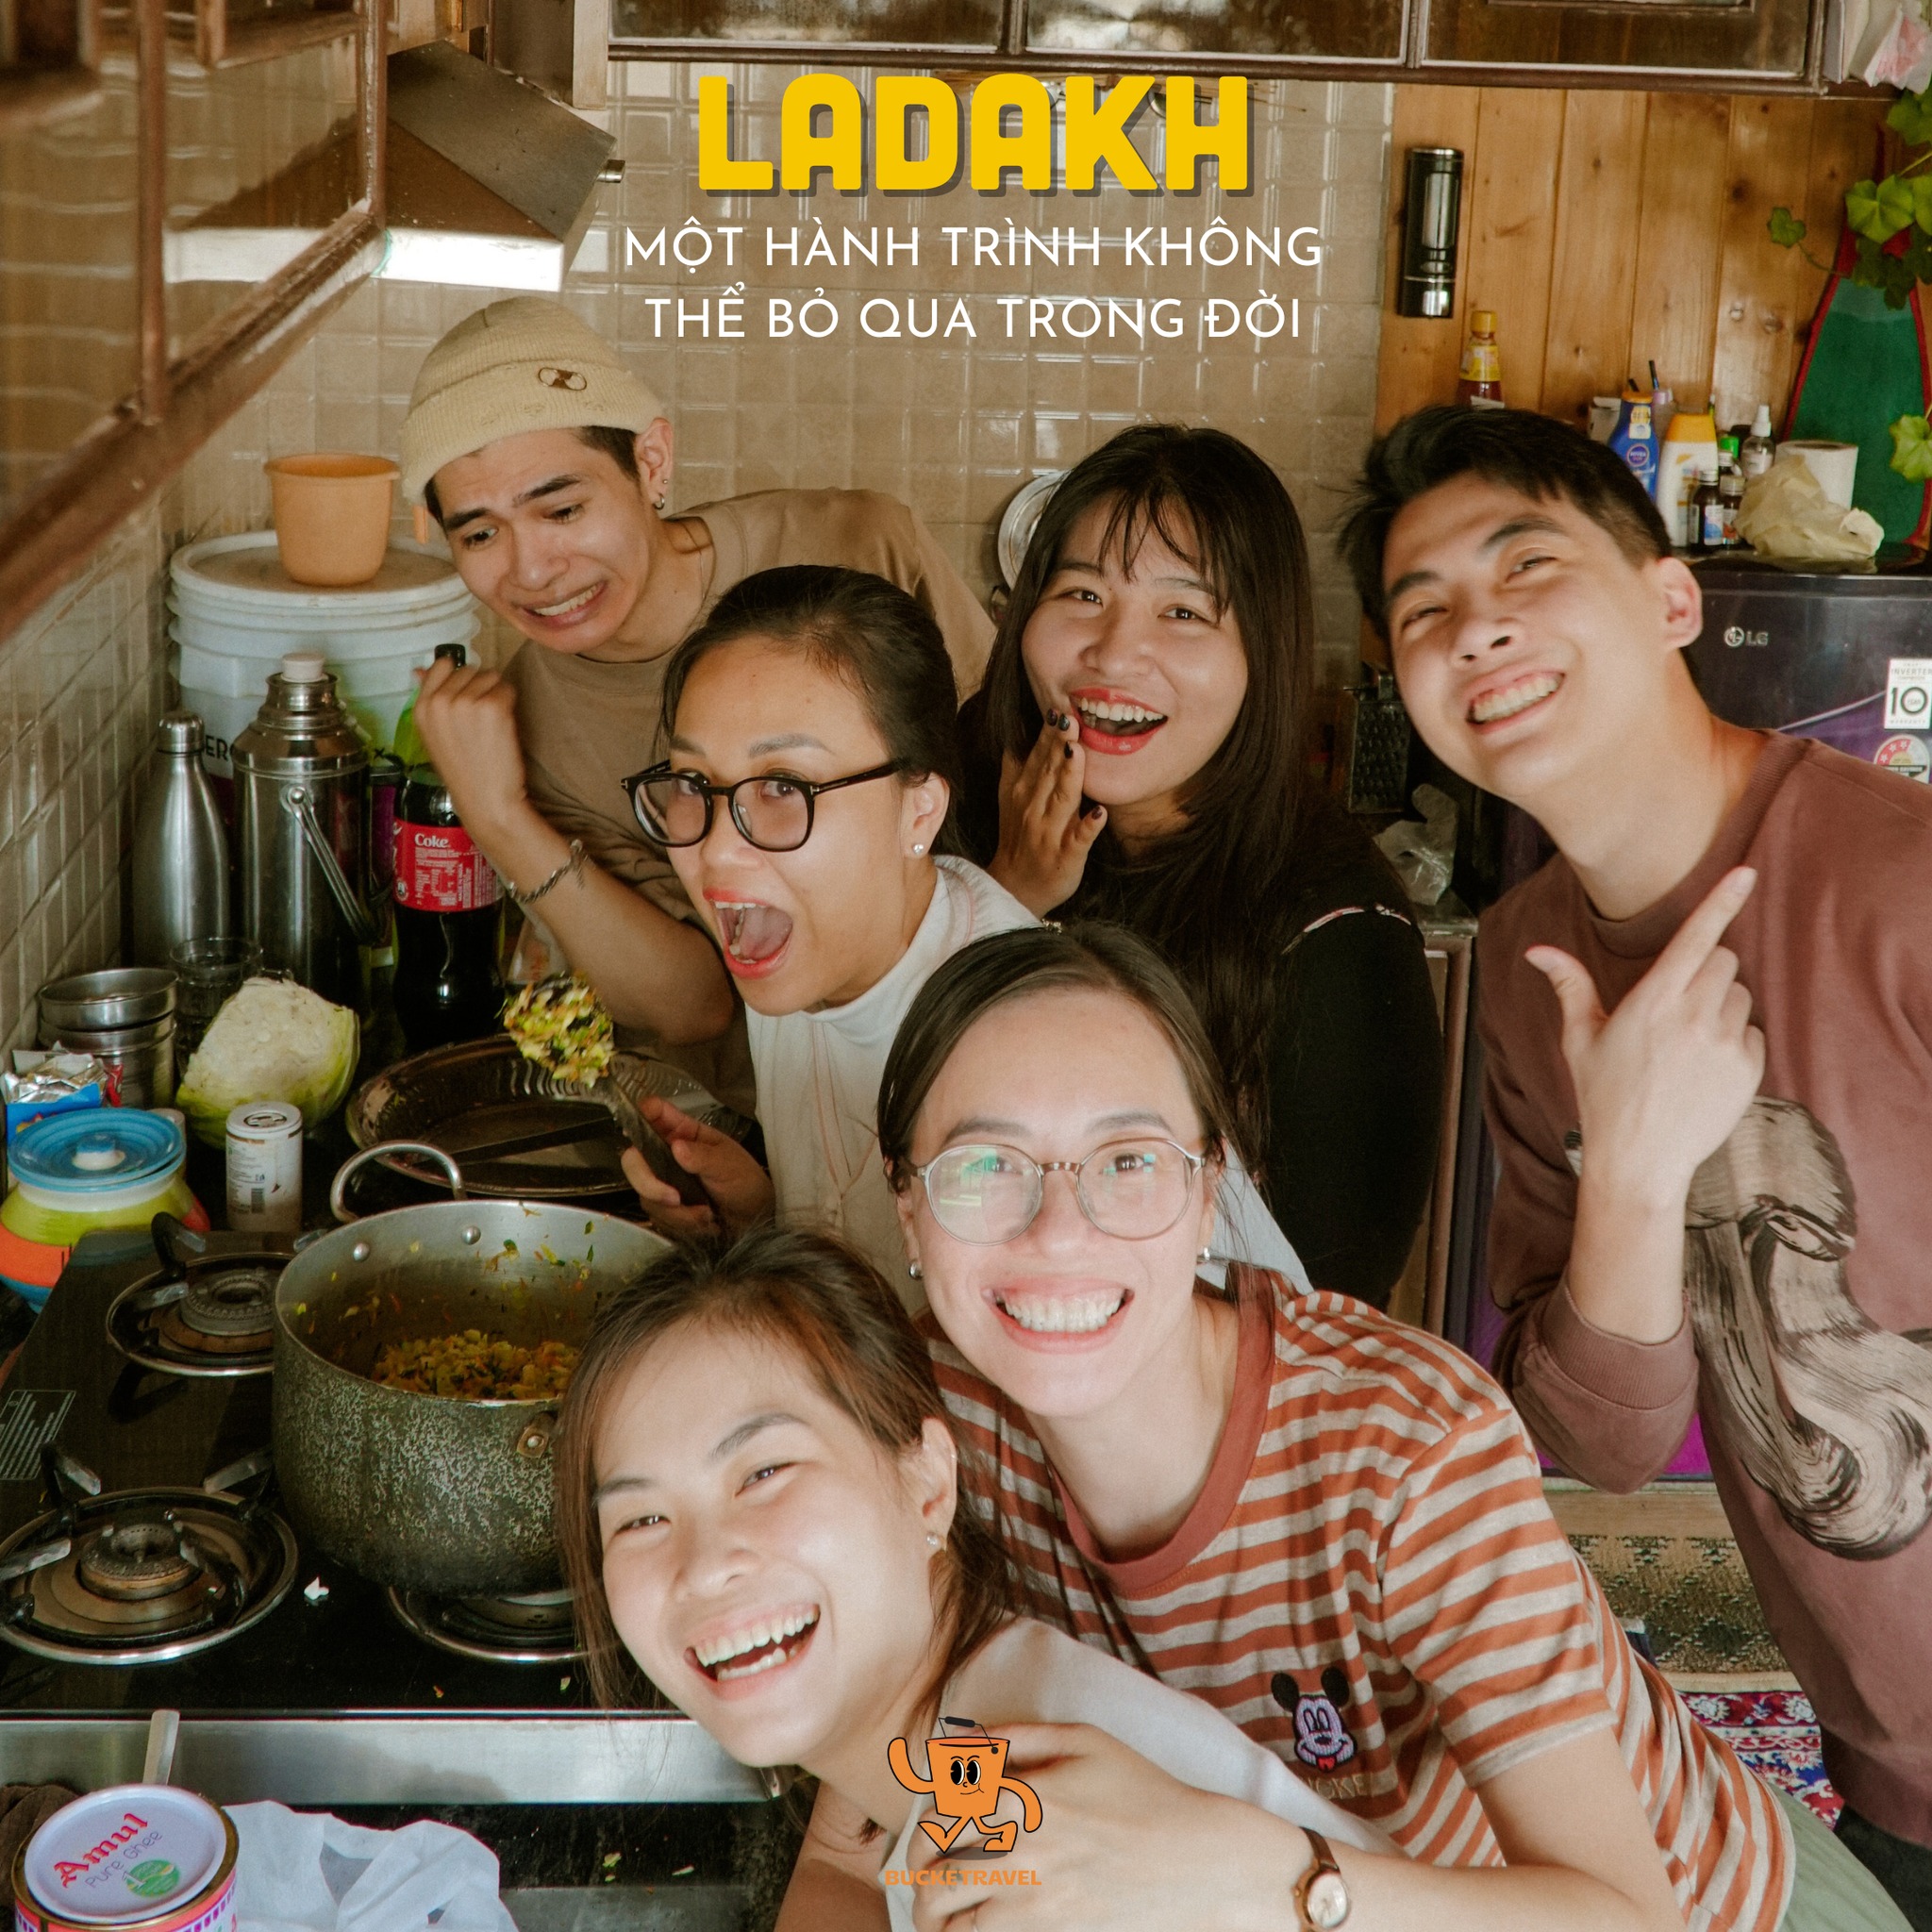 Các khách hàng của Bucketravel đang chụp hình tại gian bếp trong hành trình du lịch ladakh